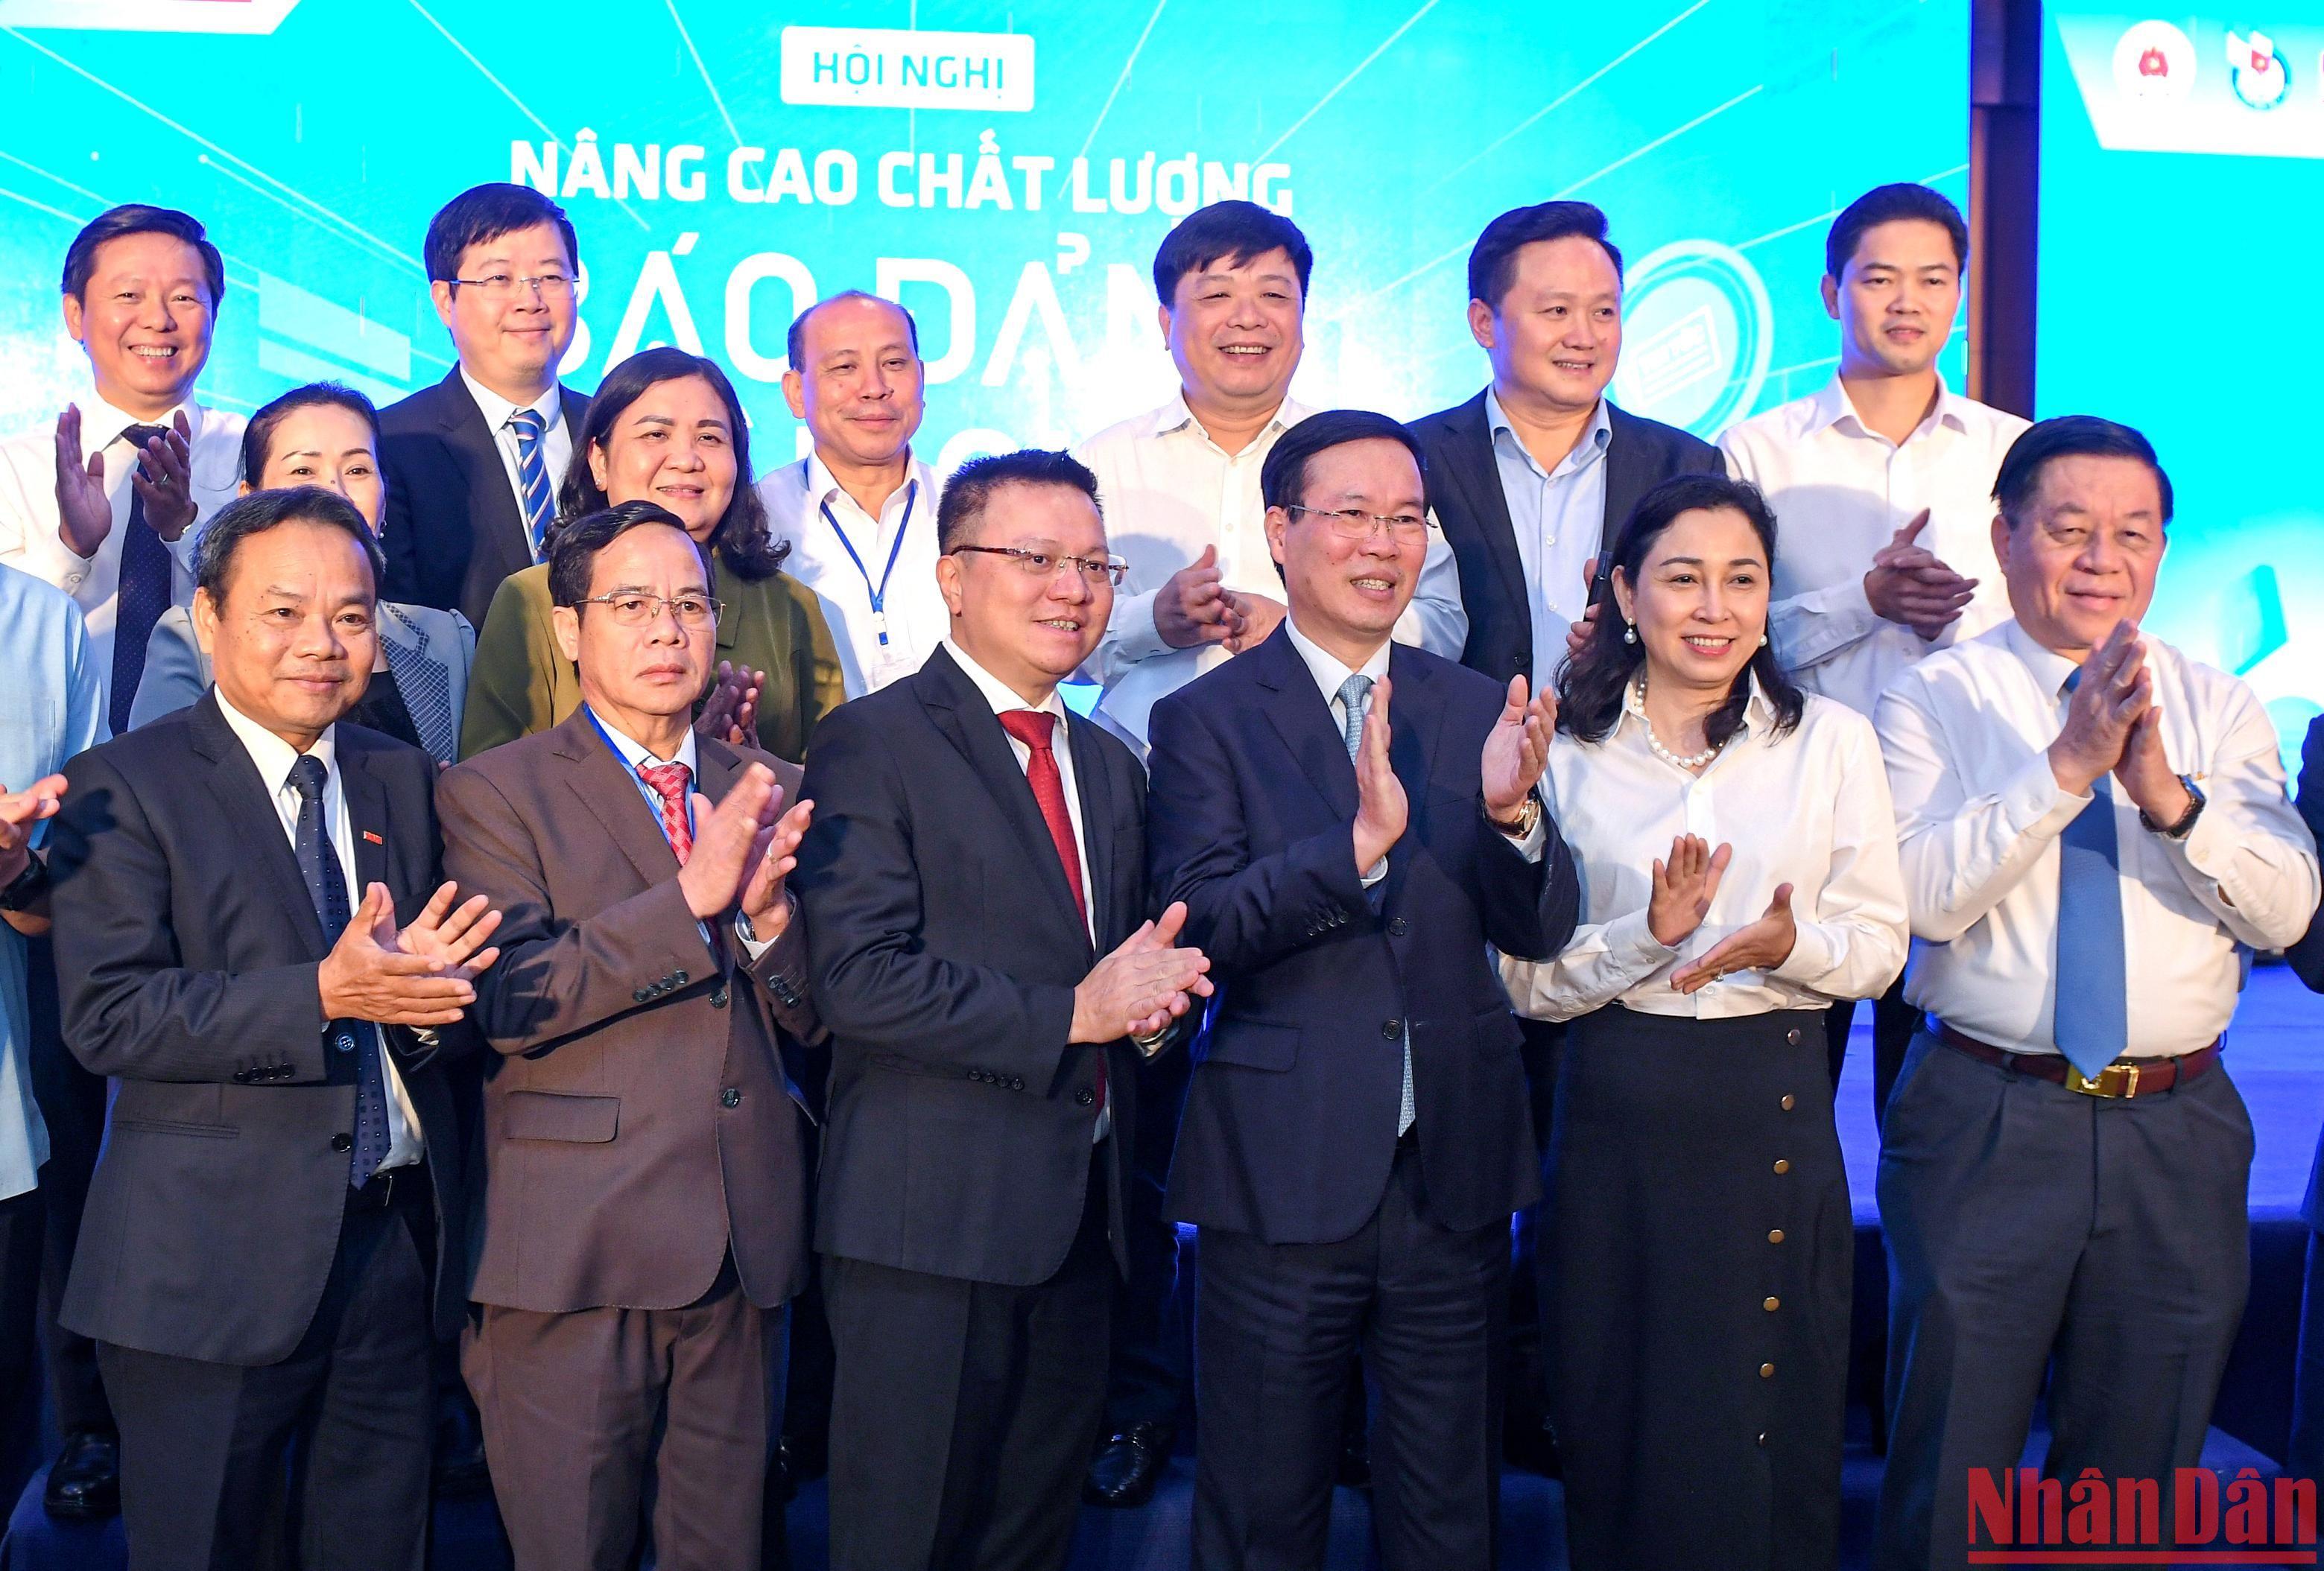 Hội nghị Nâng cao chất lượng báo Đảng toàn quốc do Báo Nhân Dân phối hợp Ban Tuyên giáo Trung ương, Hội Nhà báo Việt Nam tổ chức đã thành công tốt đẹp.